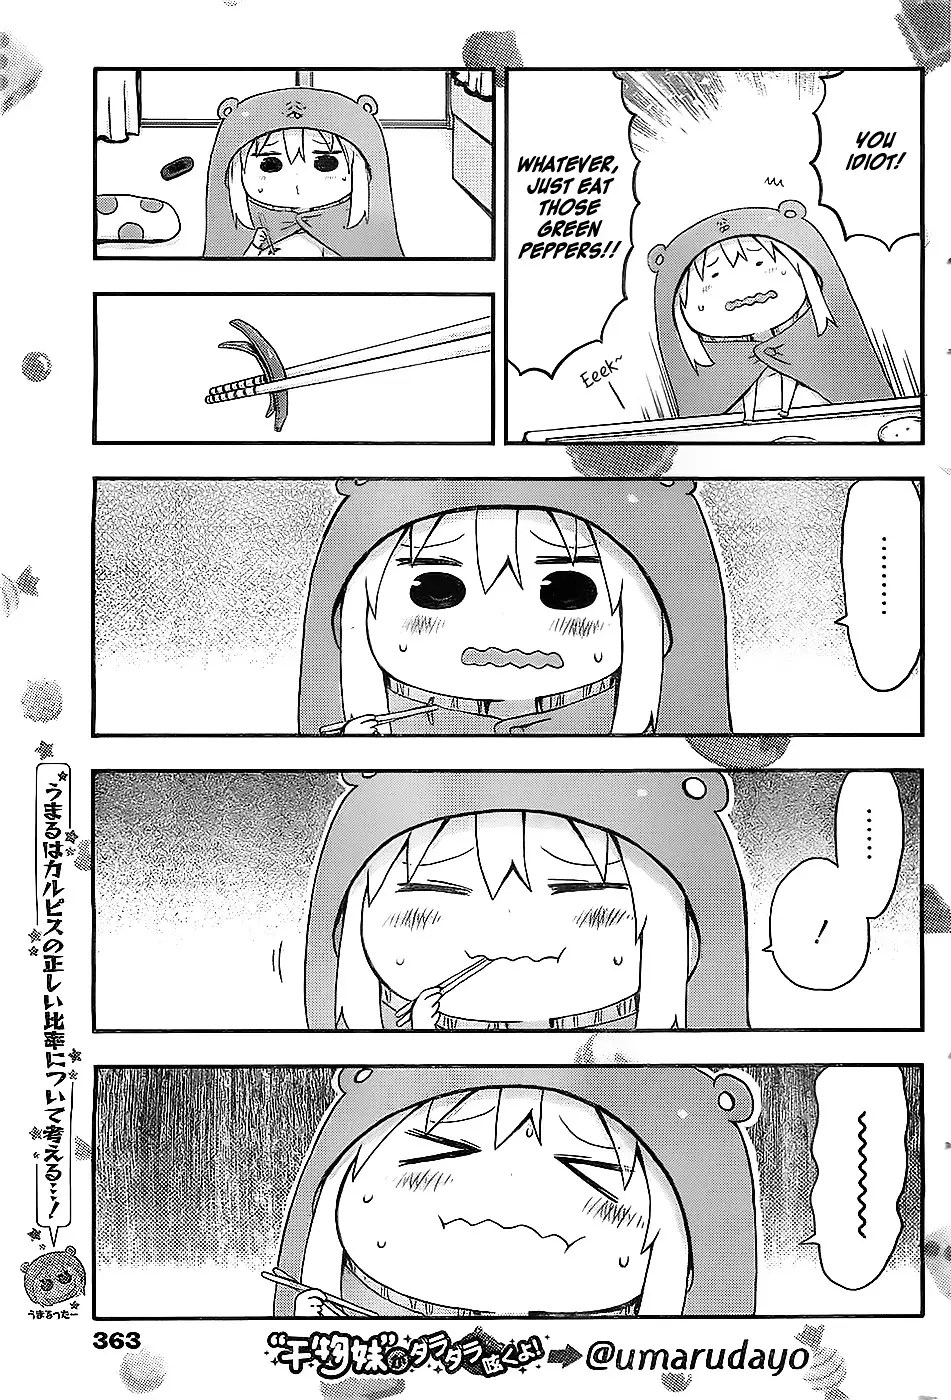 Himouto! Umaru-Chan - 23 page 3